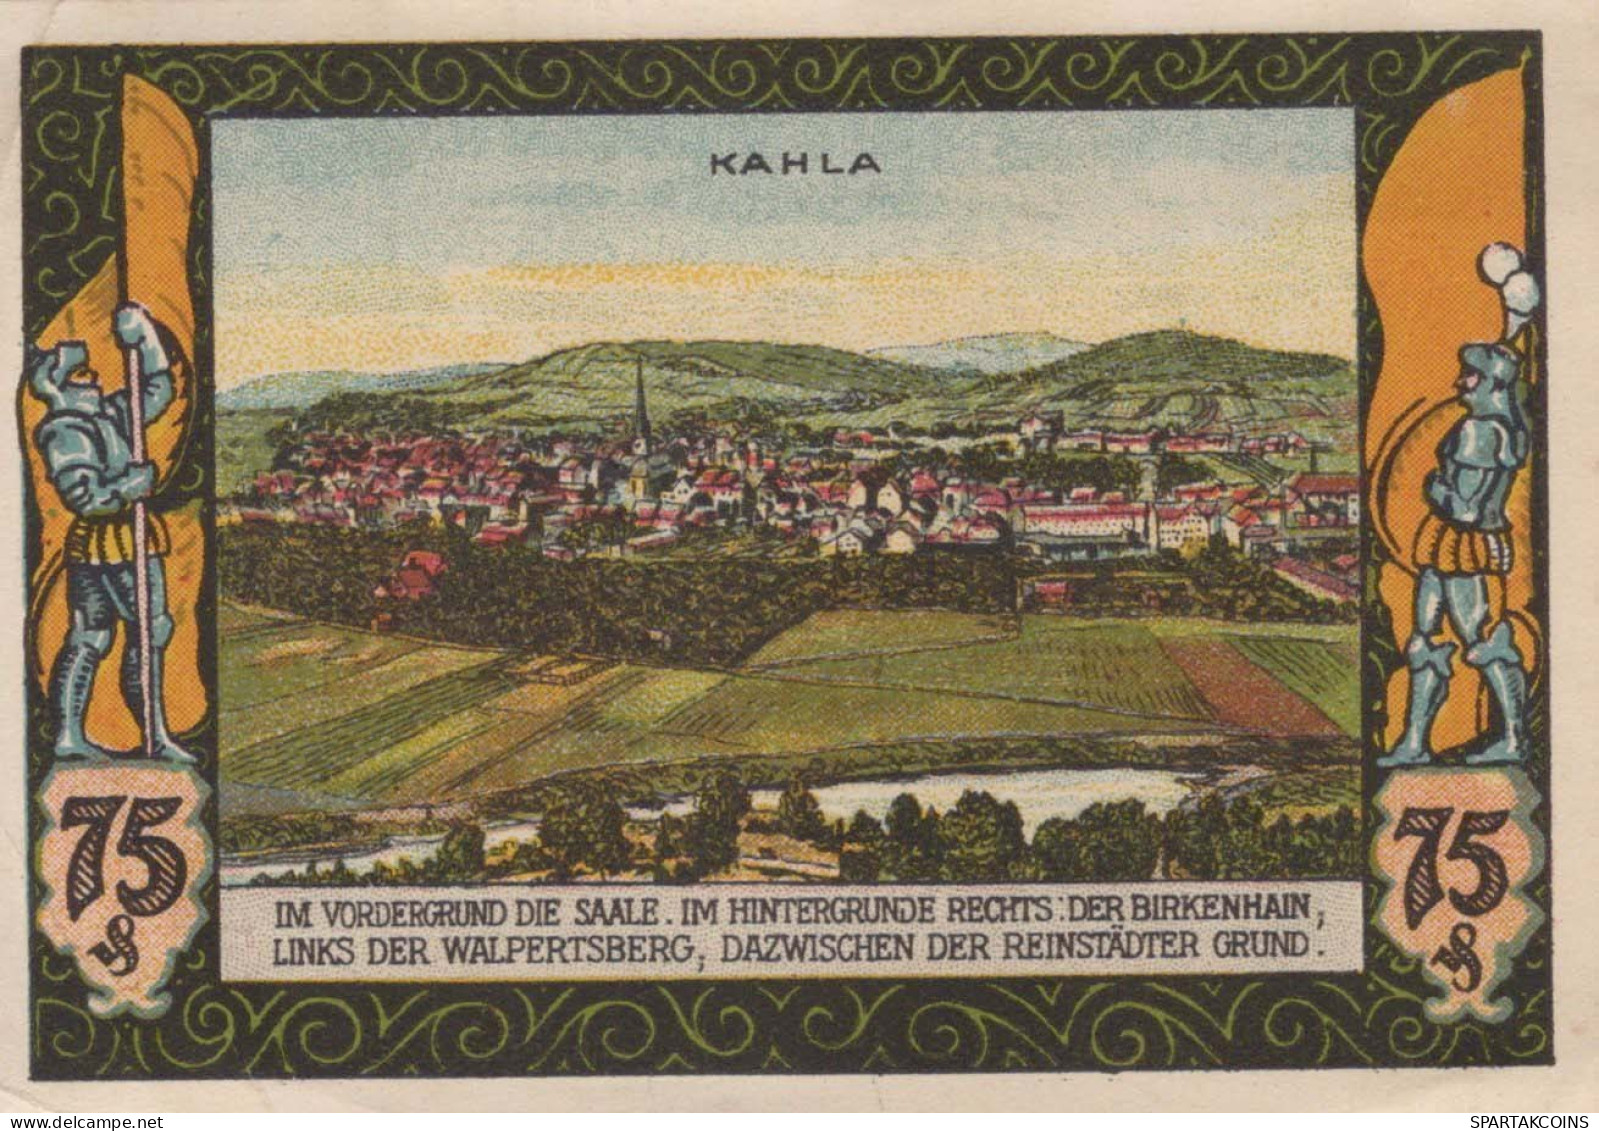 75 PFENNIG 1921 Stadt KAHLA Thuringia UNC DEUTSCHLAND Notgeld Banknote #PH676 - Lokale Ausgaben